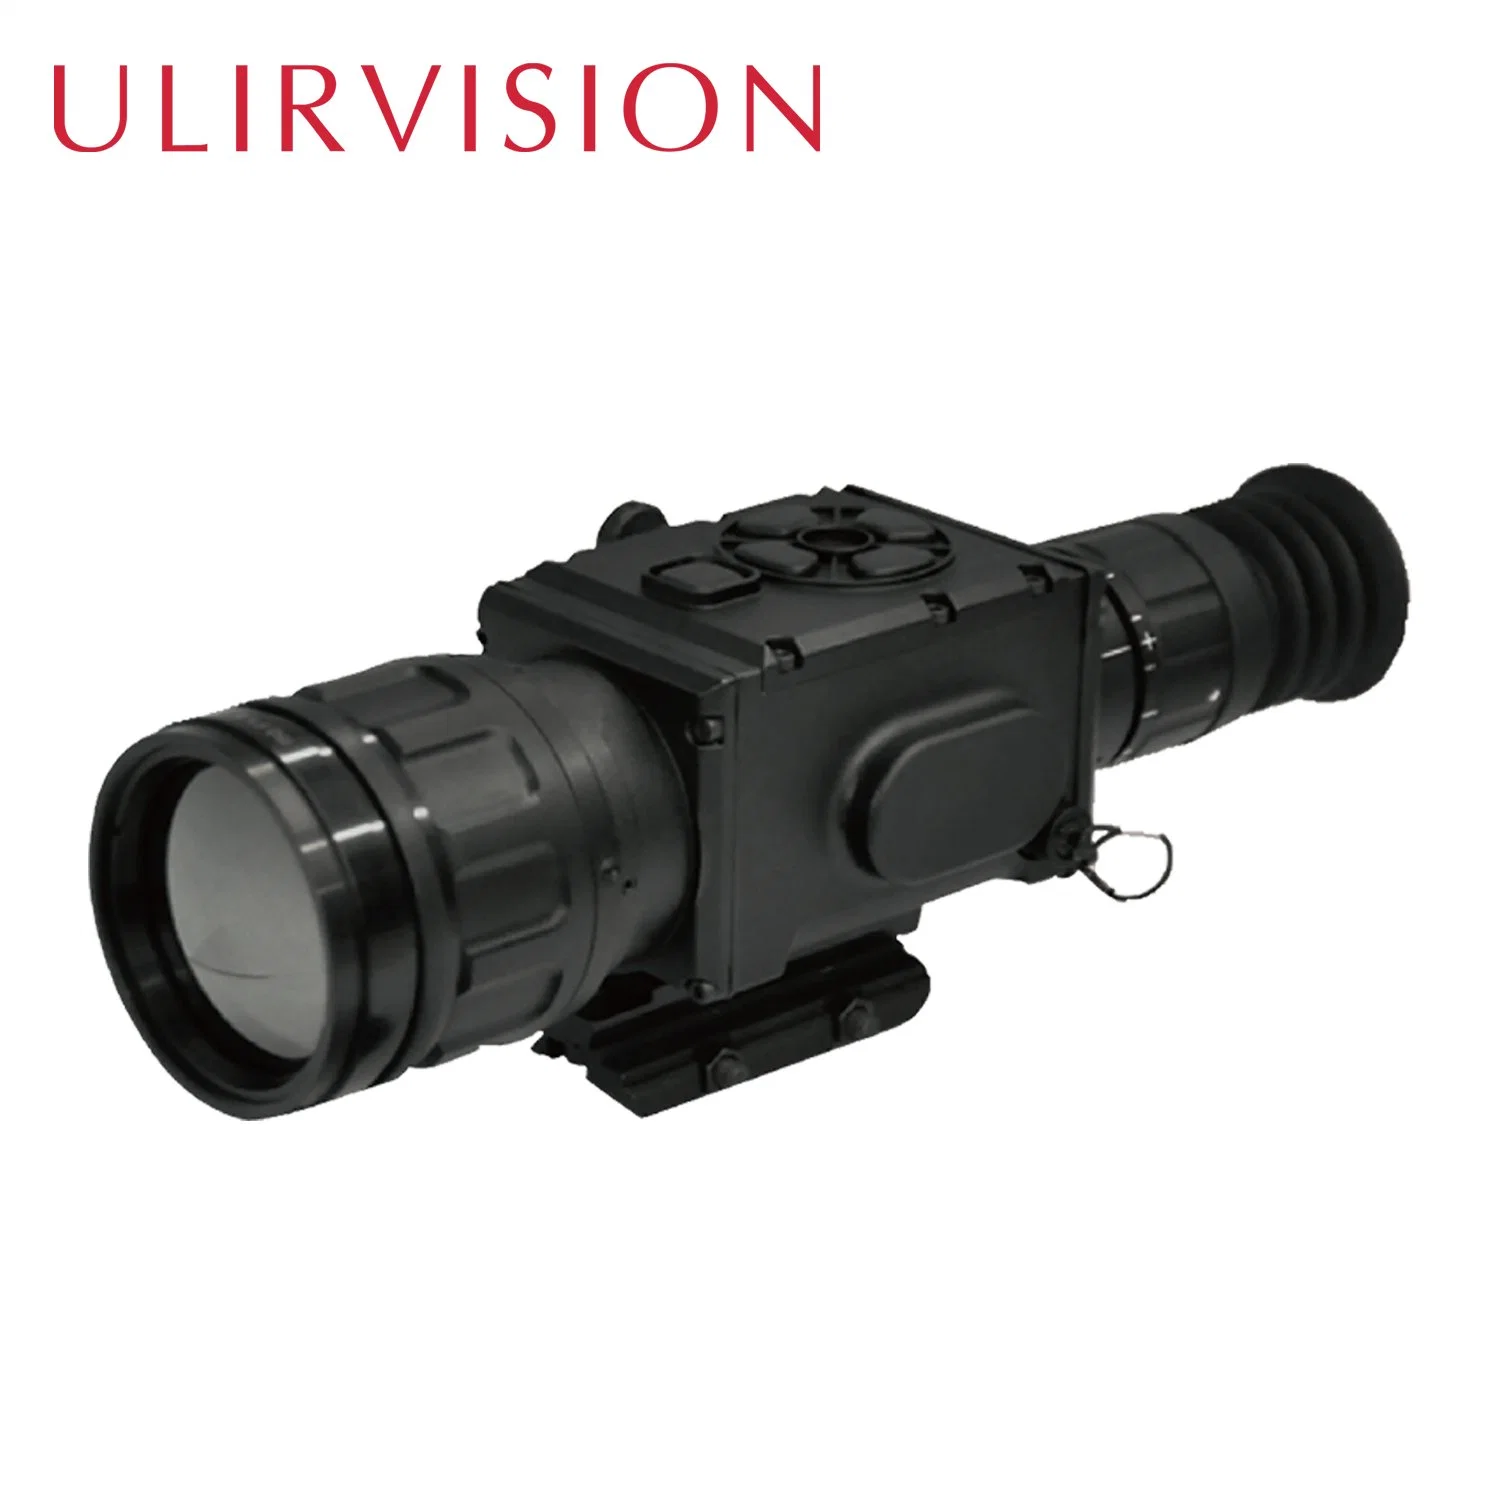 Ulirvision polyvalent de rouge à longue distance Infrarouge visée laser invisible pour la chasse pour la répression de la chasse, de la recherche et le scoutisme.